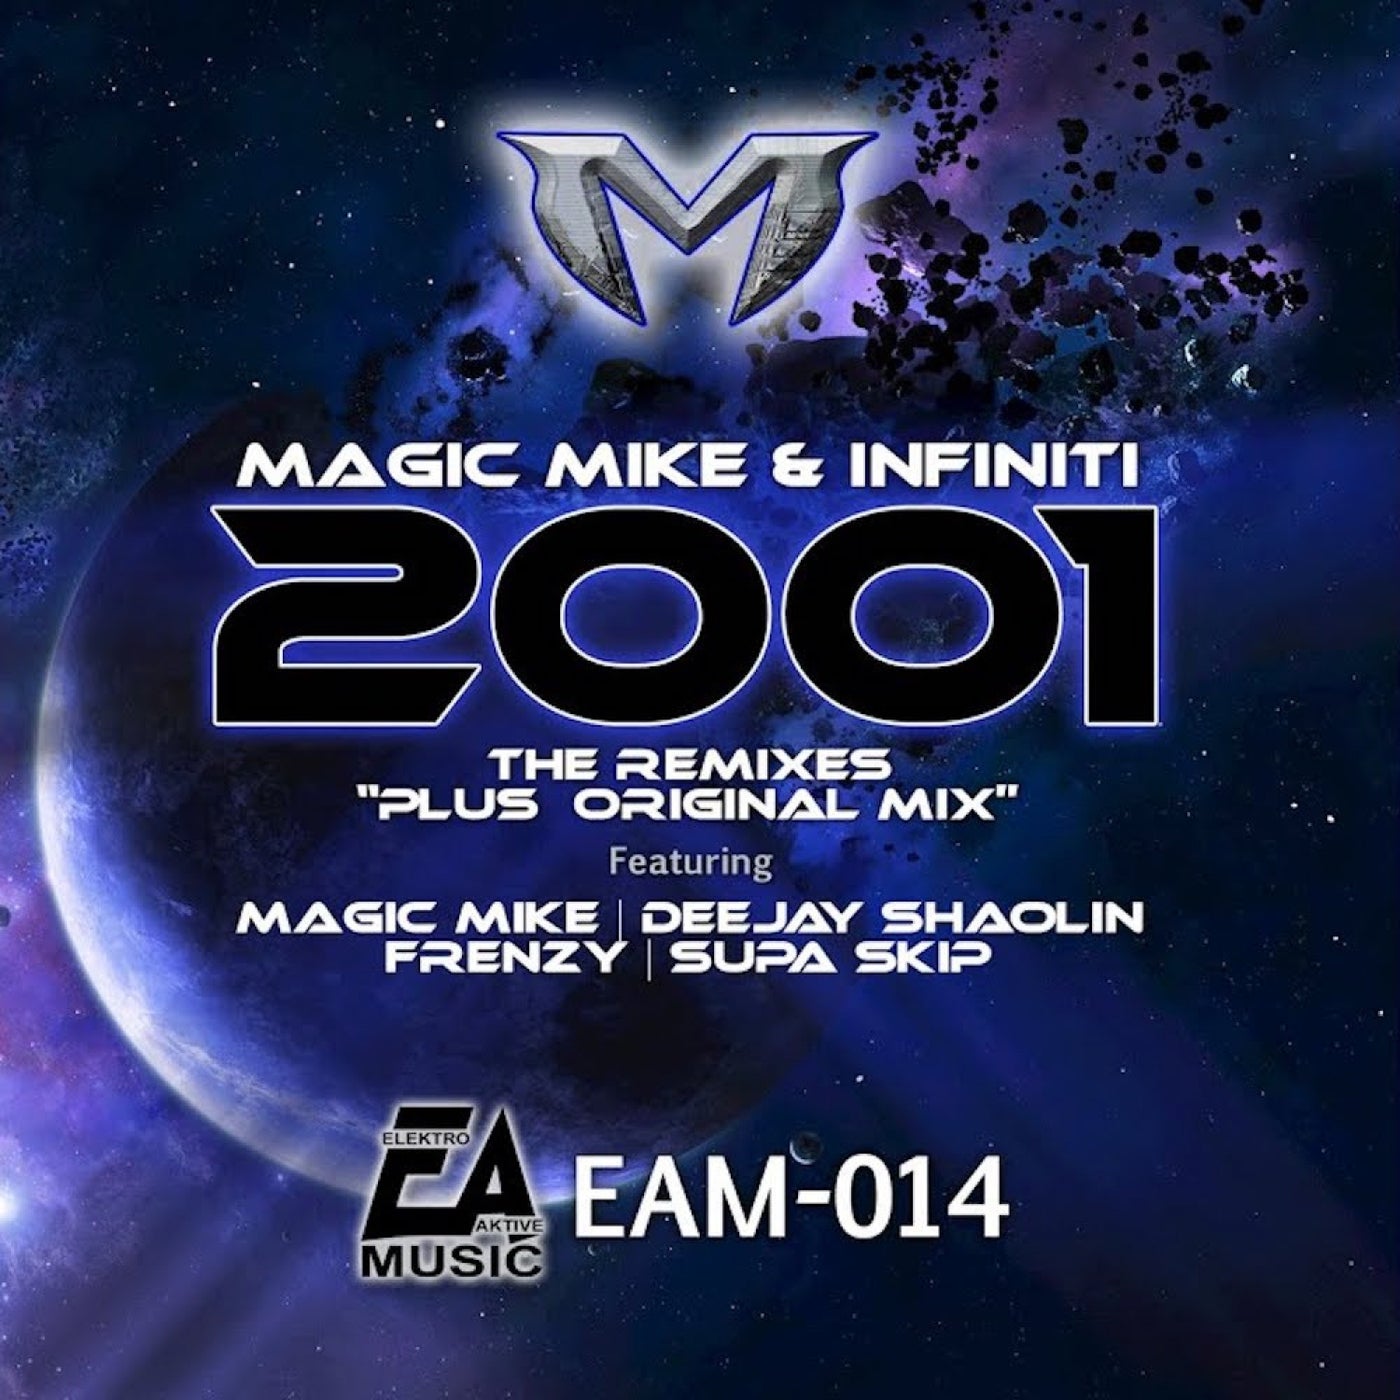 2001 (The Remixes)